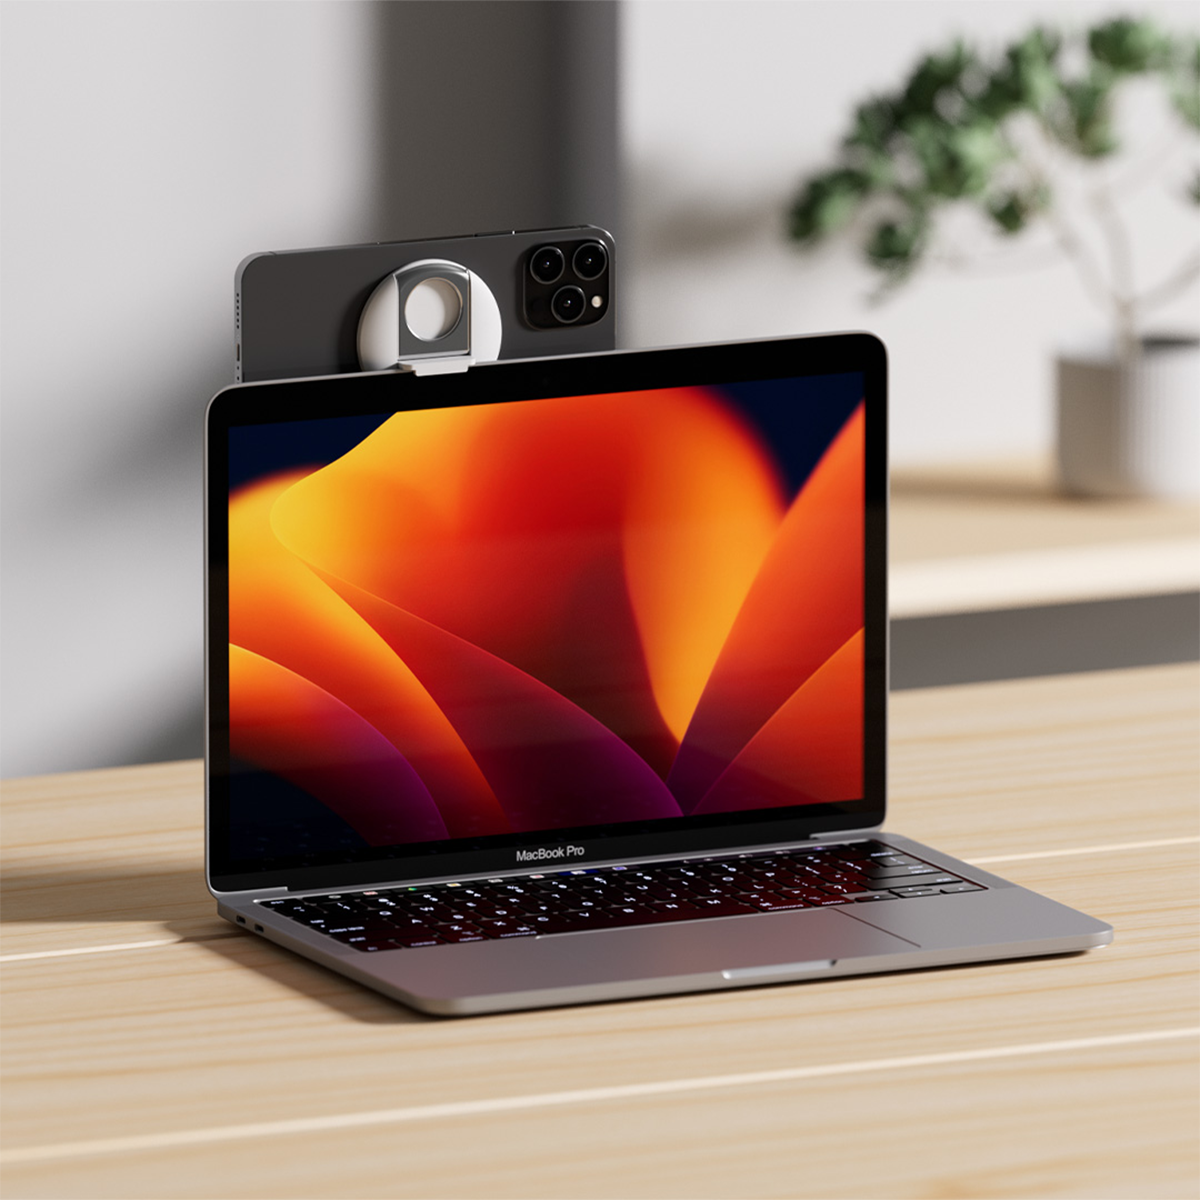 Giá đỡ iPhone sạc nam châm dành cho MacBook Belkin - Hàng chính hãng - Bảo hành 2 năm - MMA006bt